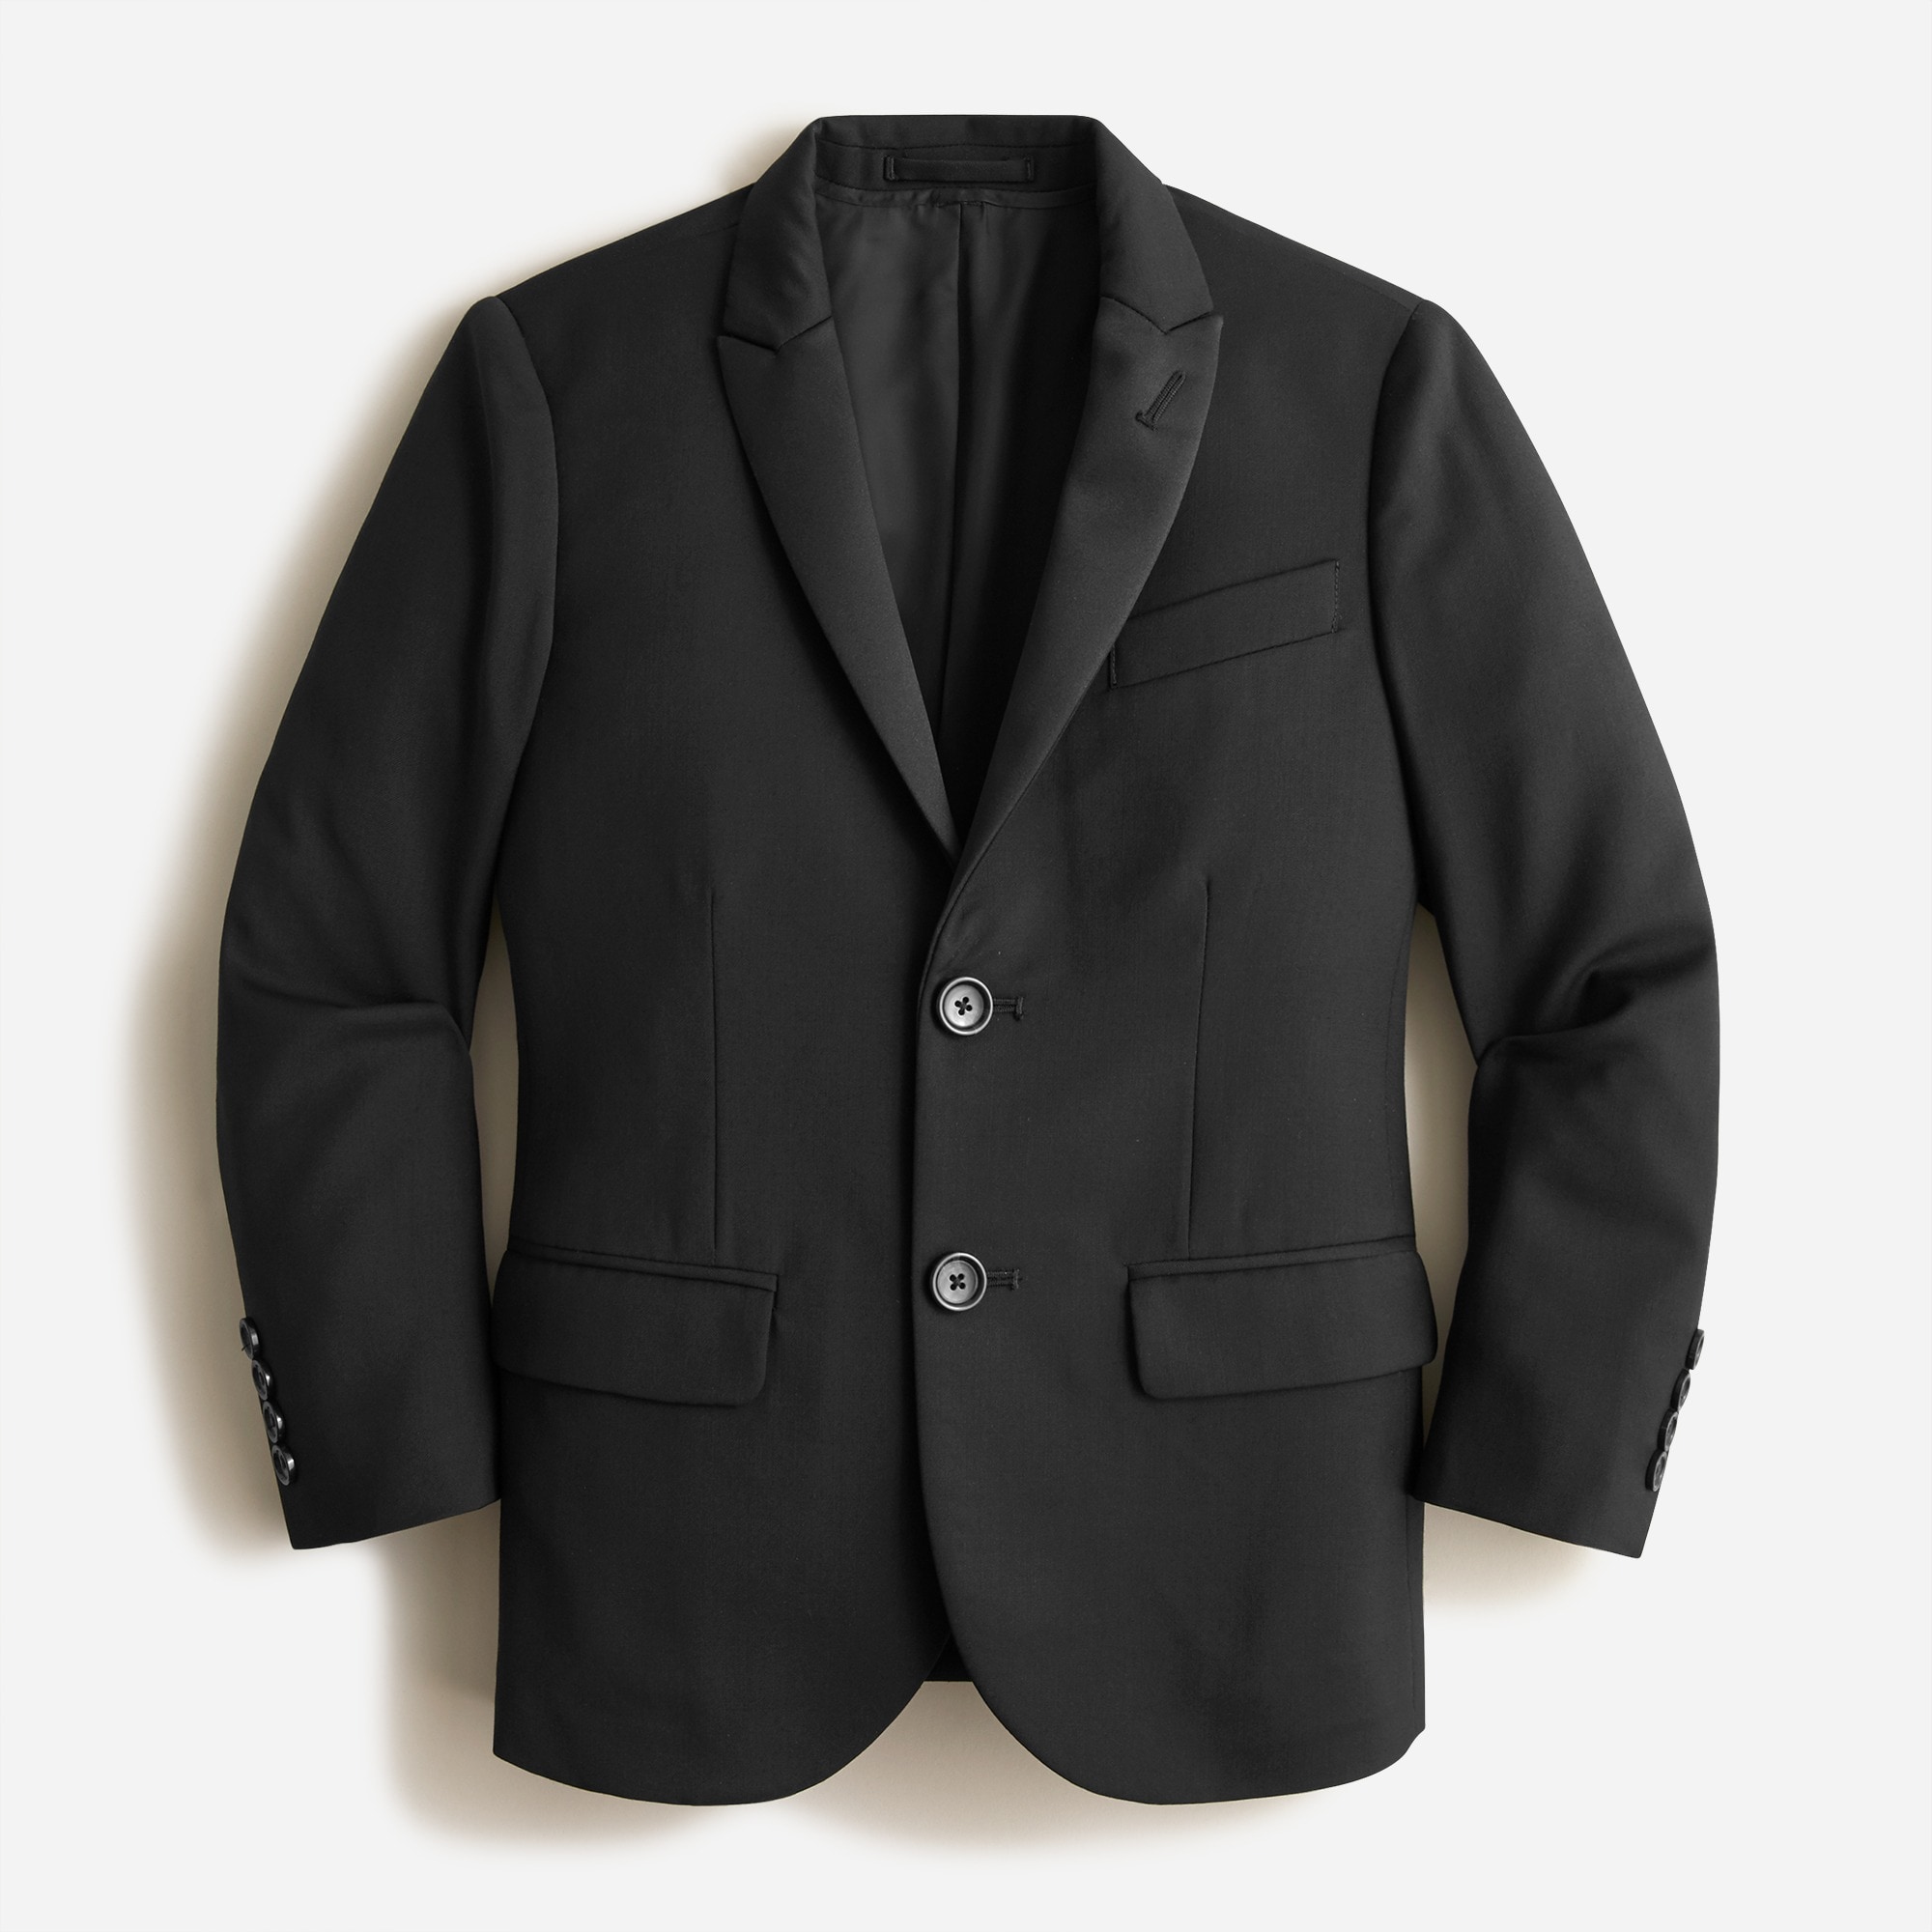  Boys' Ludlow peak-lapel tuxedo jacket in Italian wool